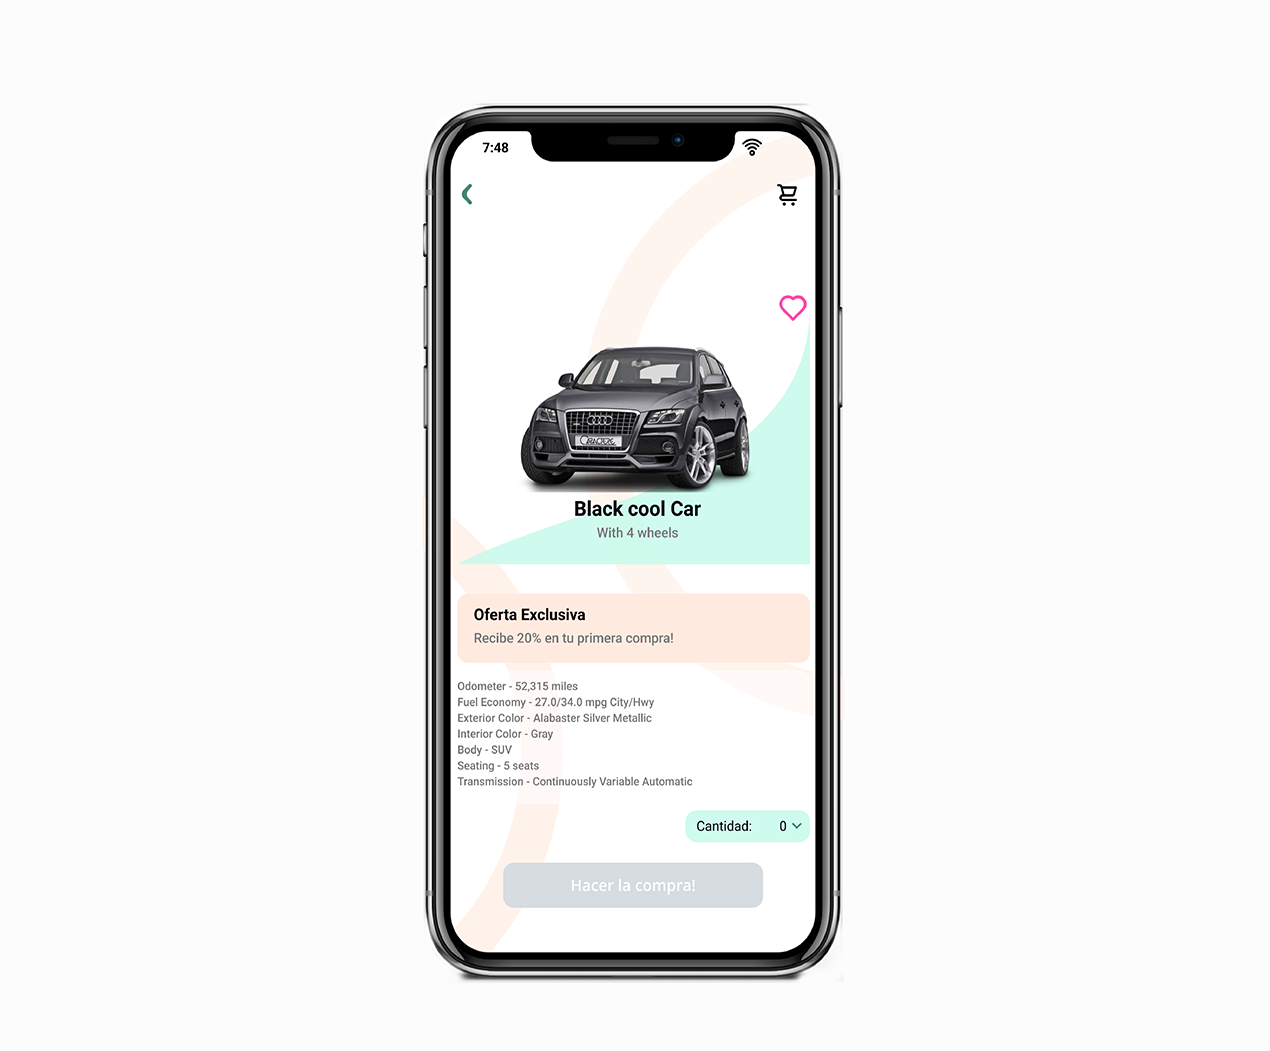 Aplicación de eCommerce, donde se muestra un automóvil negro con sus características